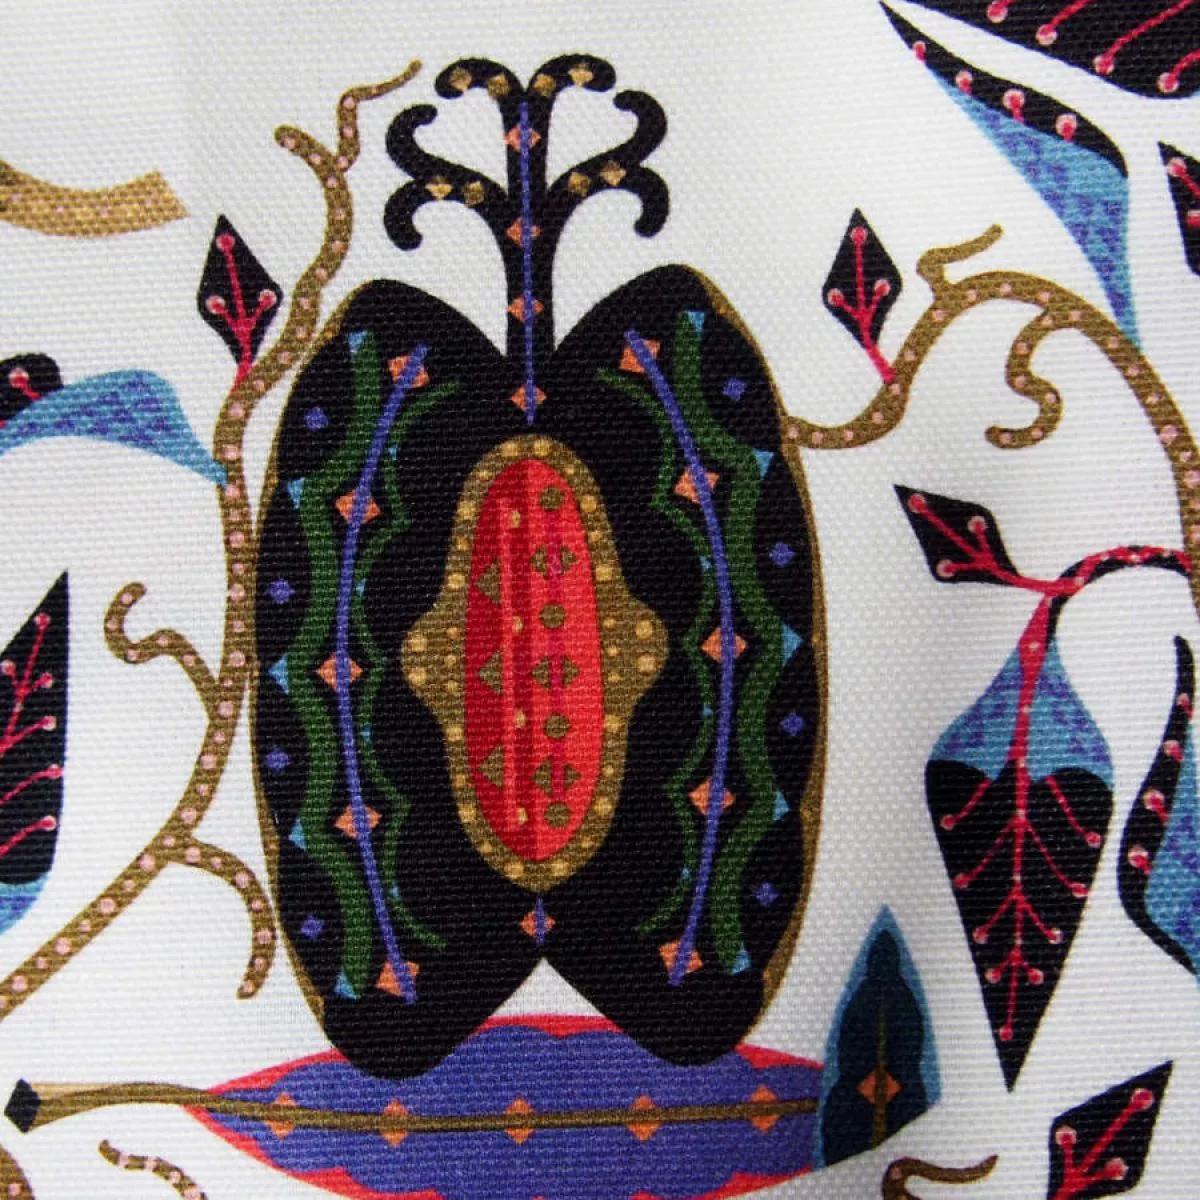 Kissenbezug "Putte" mit Katzenmotiv auf Leinen & Baumwolle (50 x 50 cm)